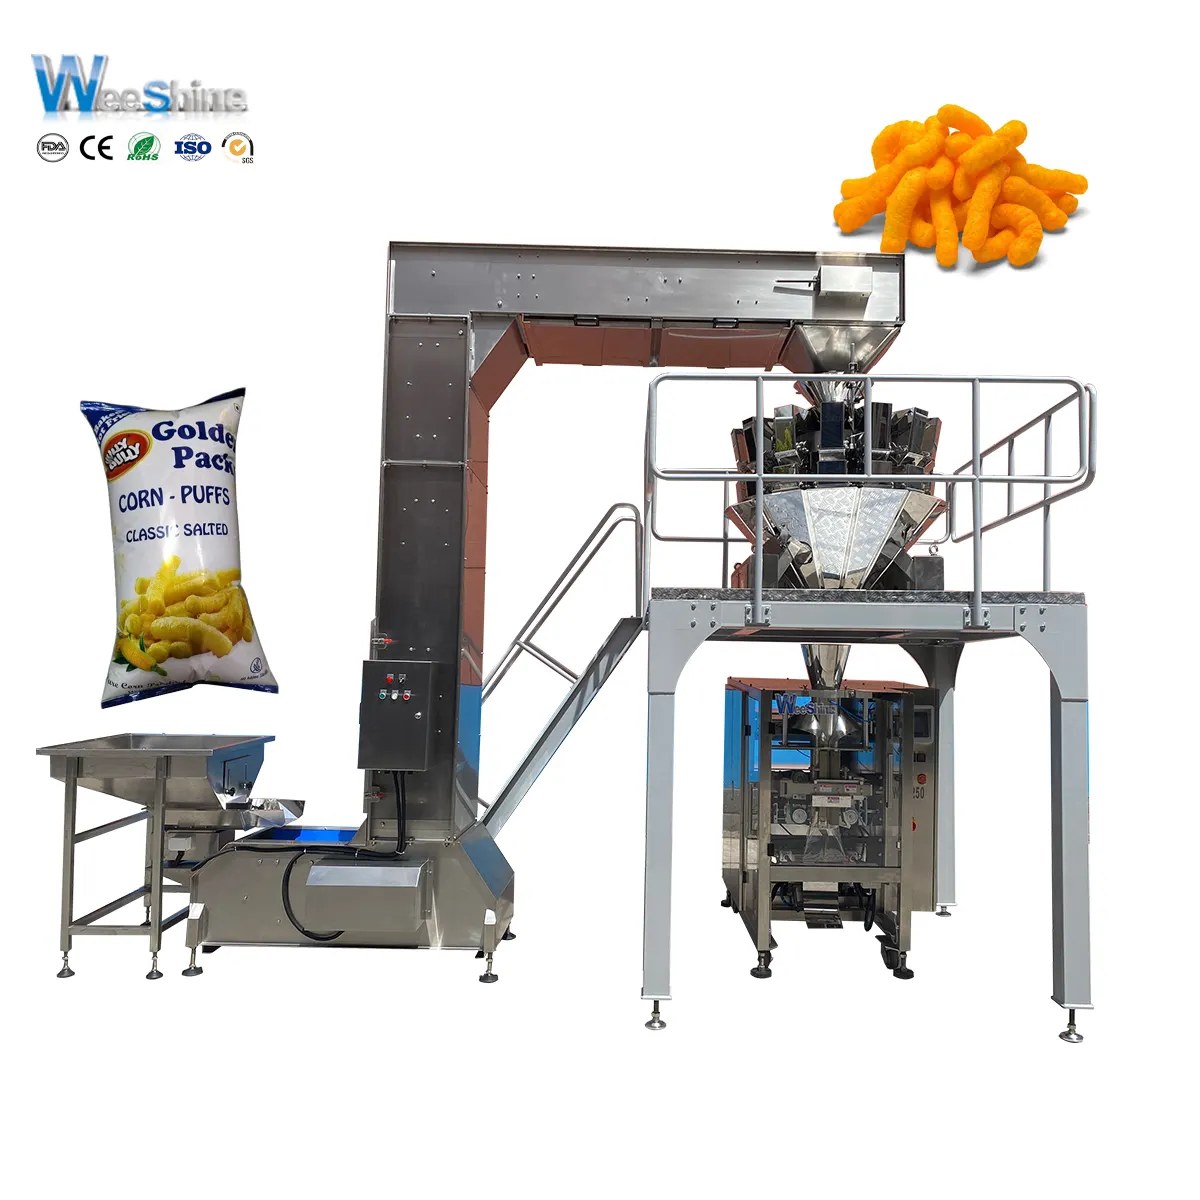 Machine d'emballage et de scellage de qualité alimentaire verticale automatique pour bouffées de fromage frites de maïs soufflé pop-corn fabriqué en Chine